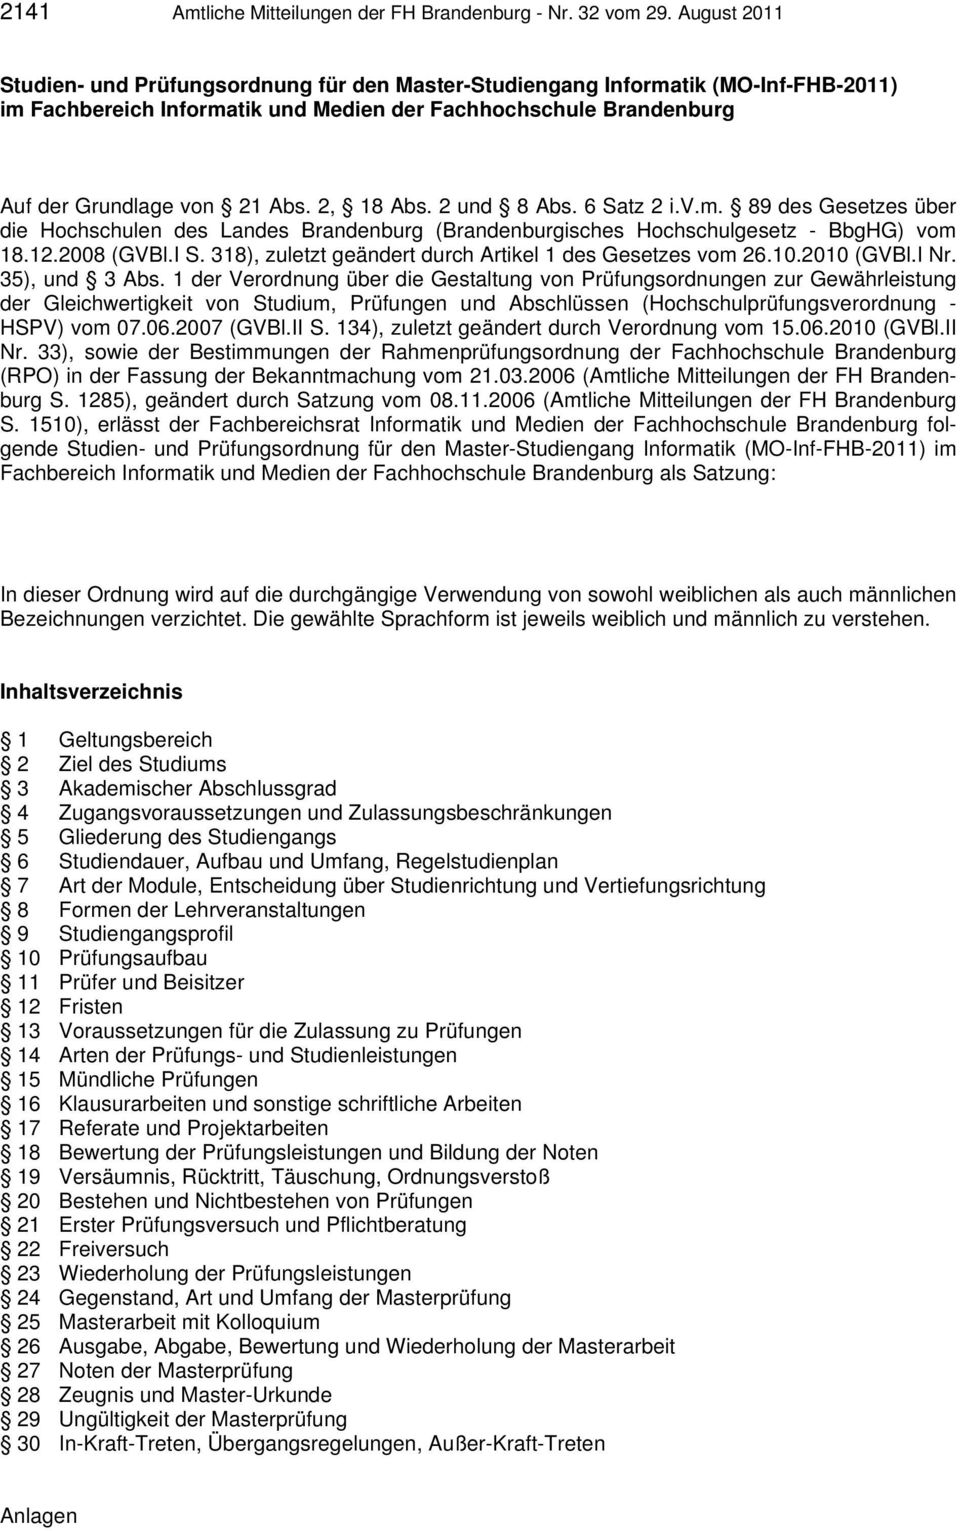 2, 18 Abs. 2 und 8 Abs. 6 Satz 2 i.v.m. 89 des Gesetzes über die Hochschulen des Landes Brandenburg (Brandenburgisches Hochschulgesetz - BbgHG) vom 18.12.2008 (GVBl.I S.